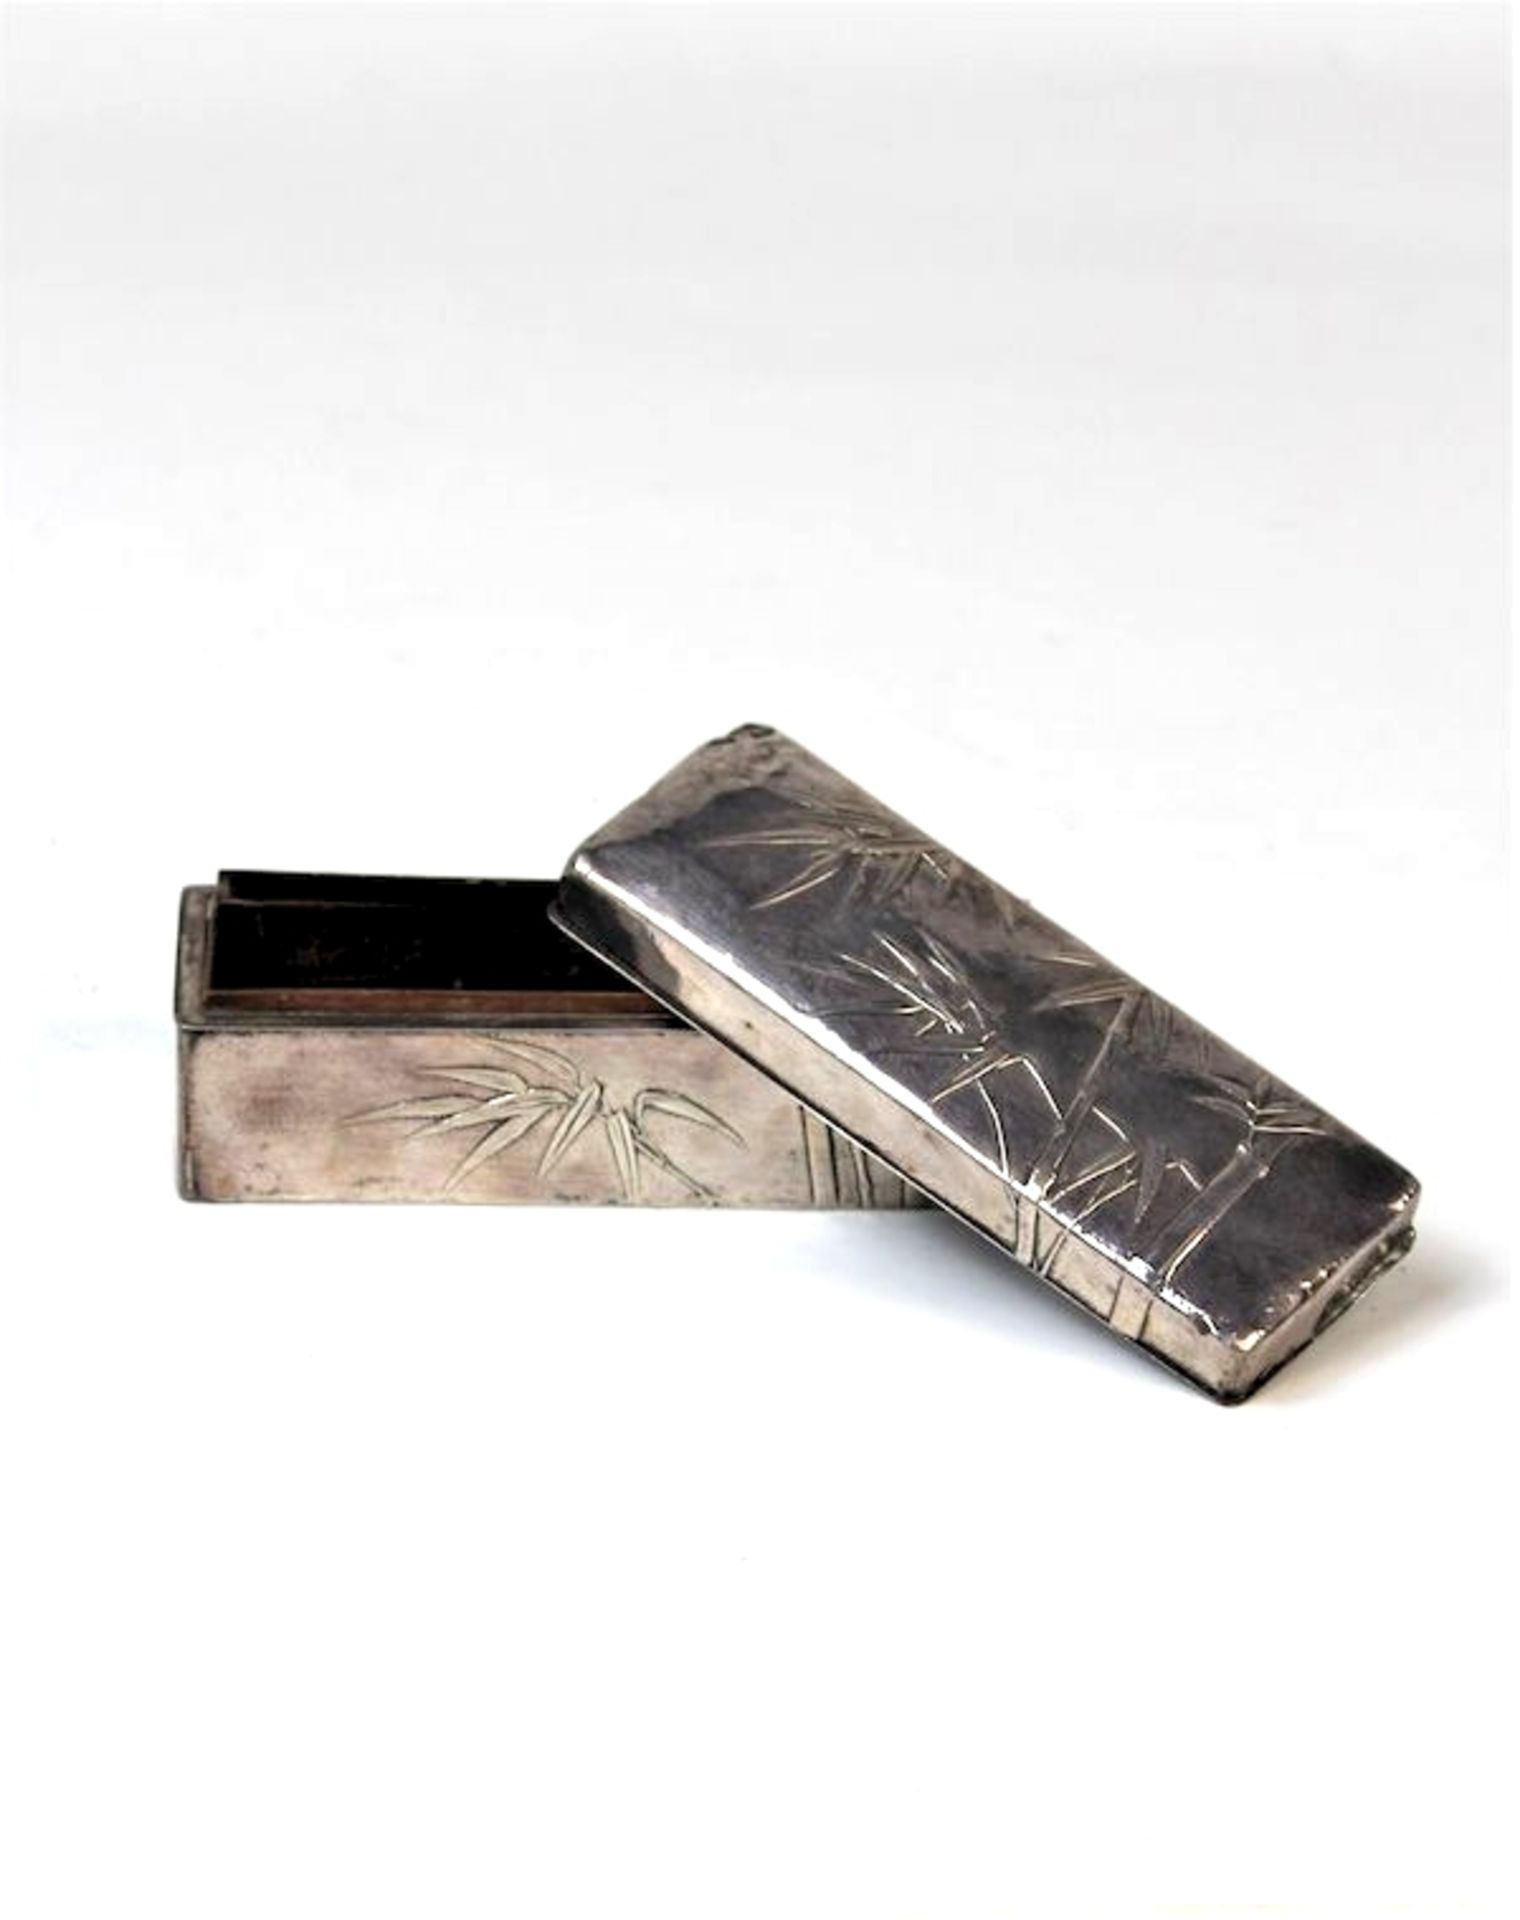 Silberdose " Bambussträucher ", China 19.Jhdt.Holz mit aufgelegtem Silber, getrieben Maße: ca. 12, - Bild 2 aus 3